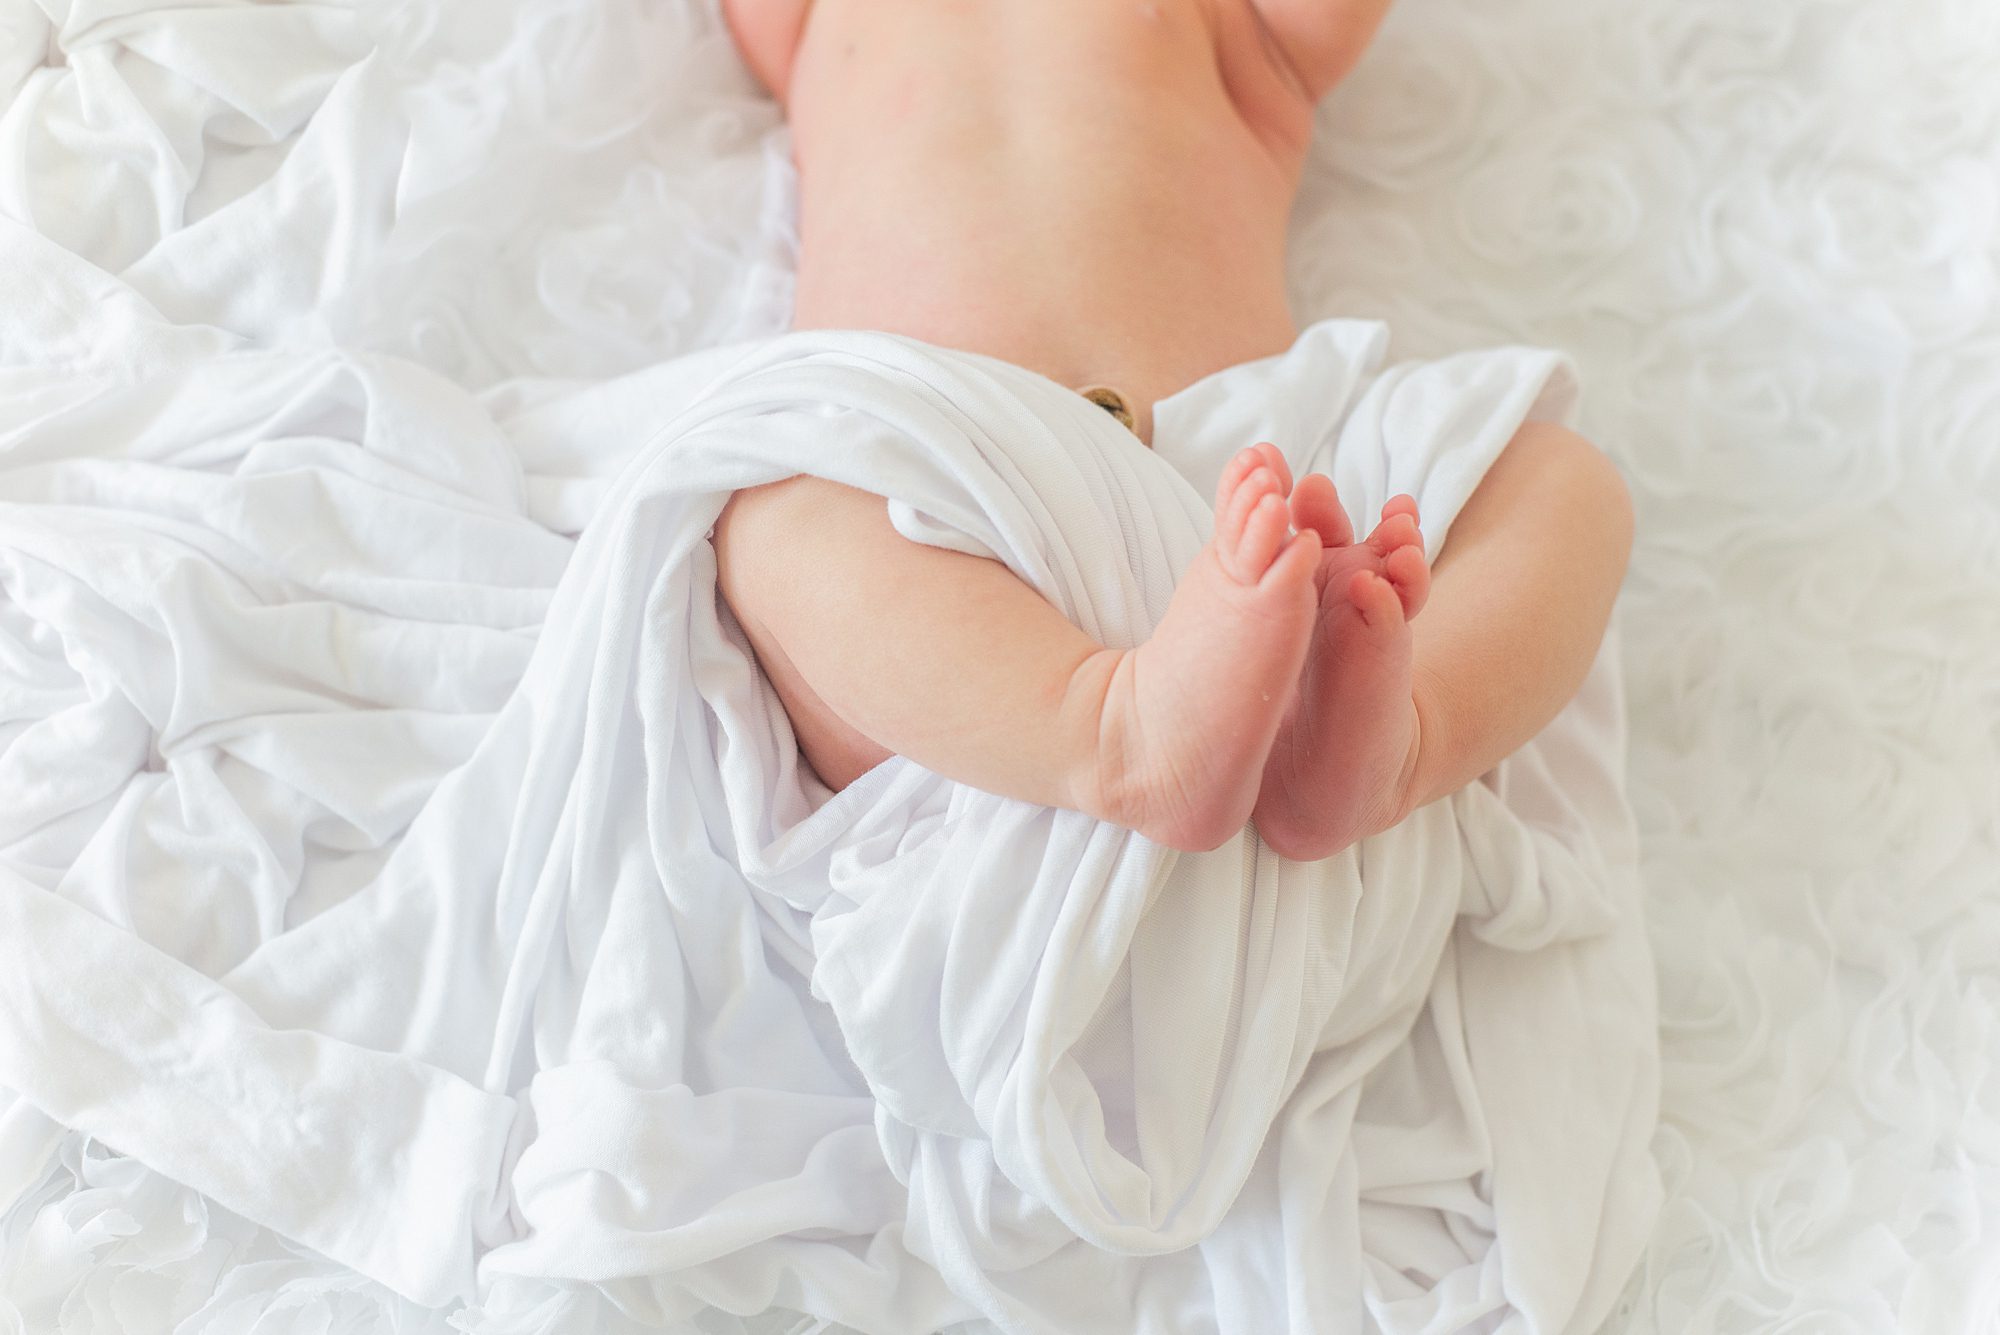 San Diego Newborn photographer, Leigh Castelli, captures newborn details